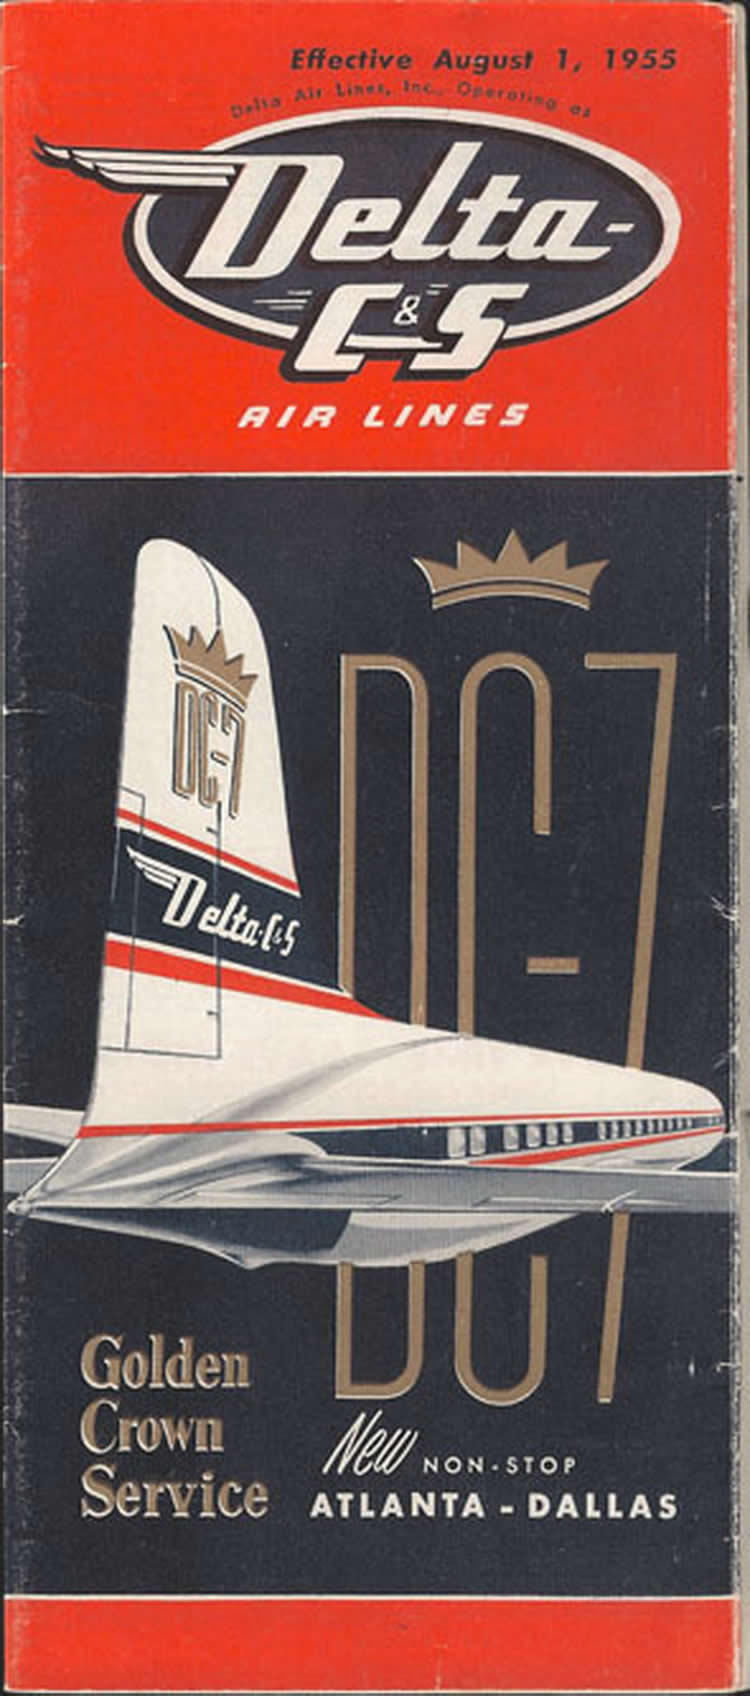 vintage airline timetable for delta